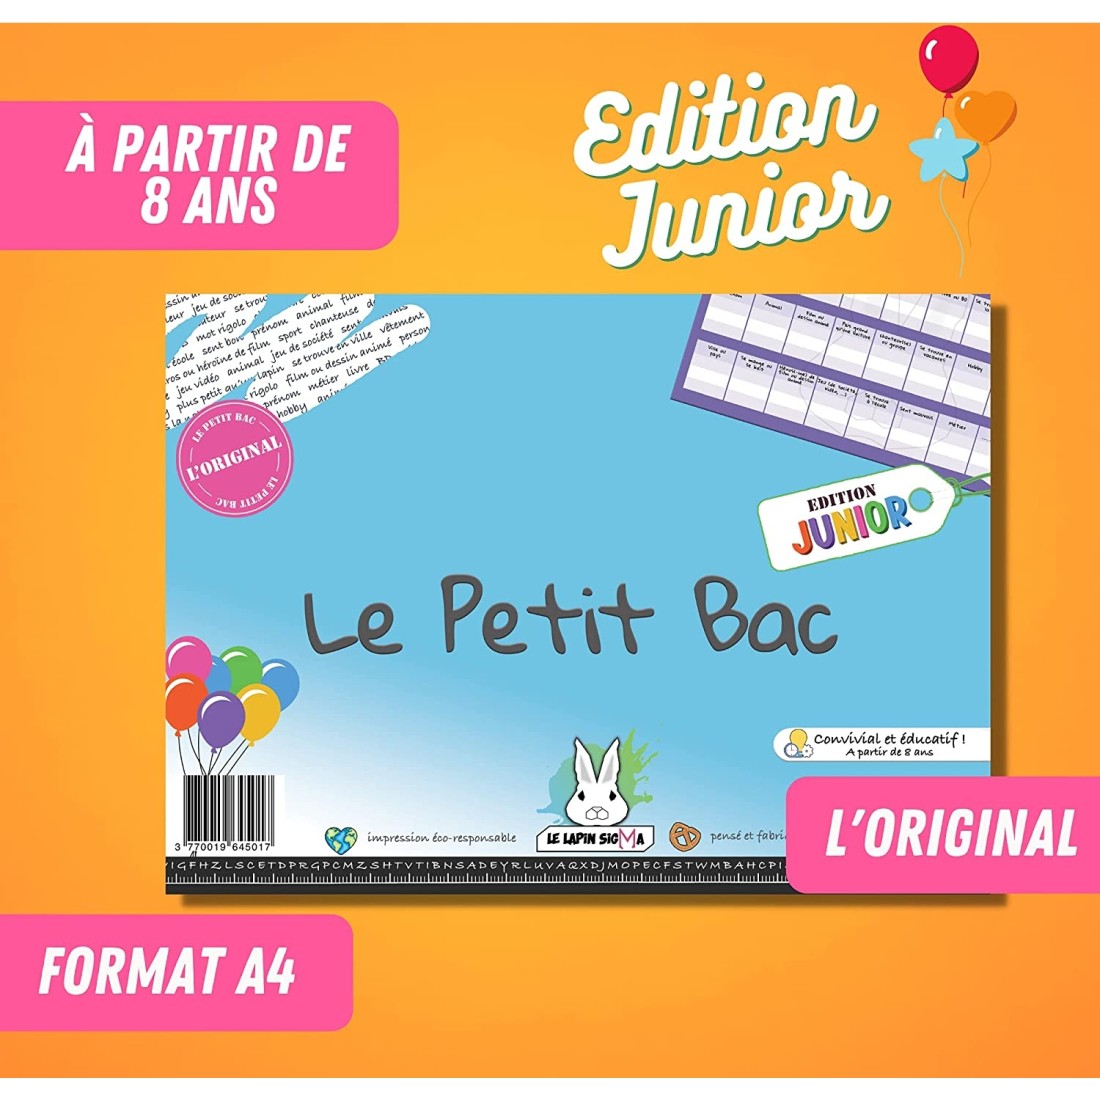 Jeu du Petit Bac - Edition Junior - Jeux de société - Le Lapin Sigma